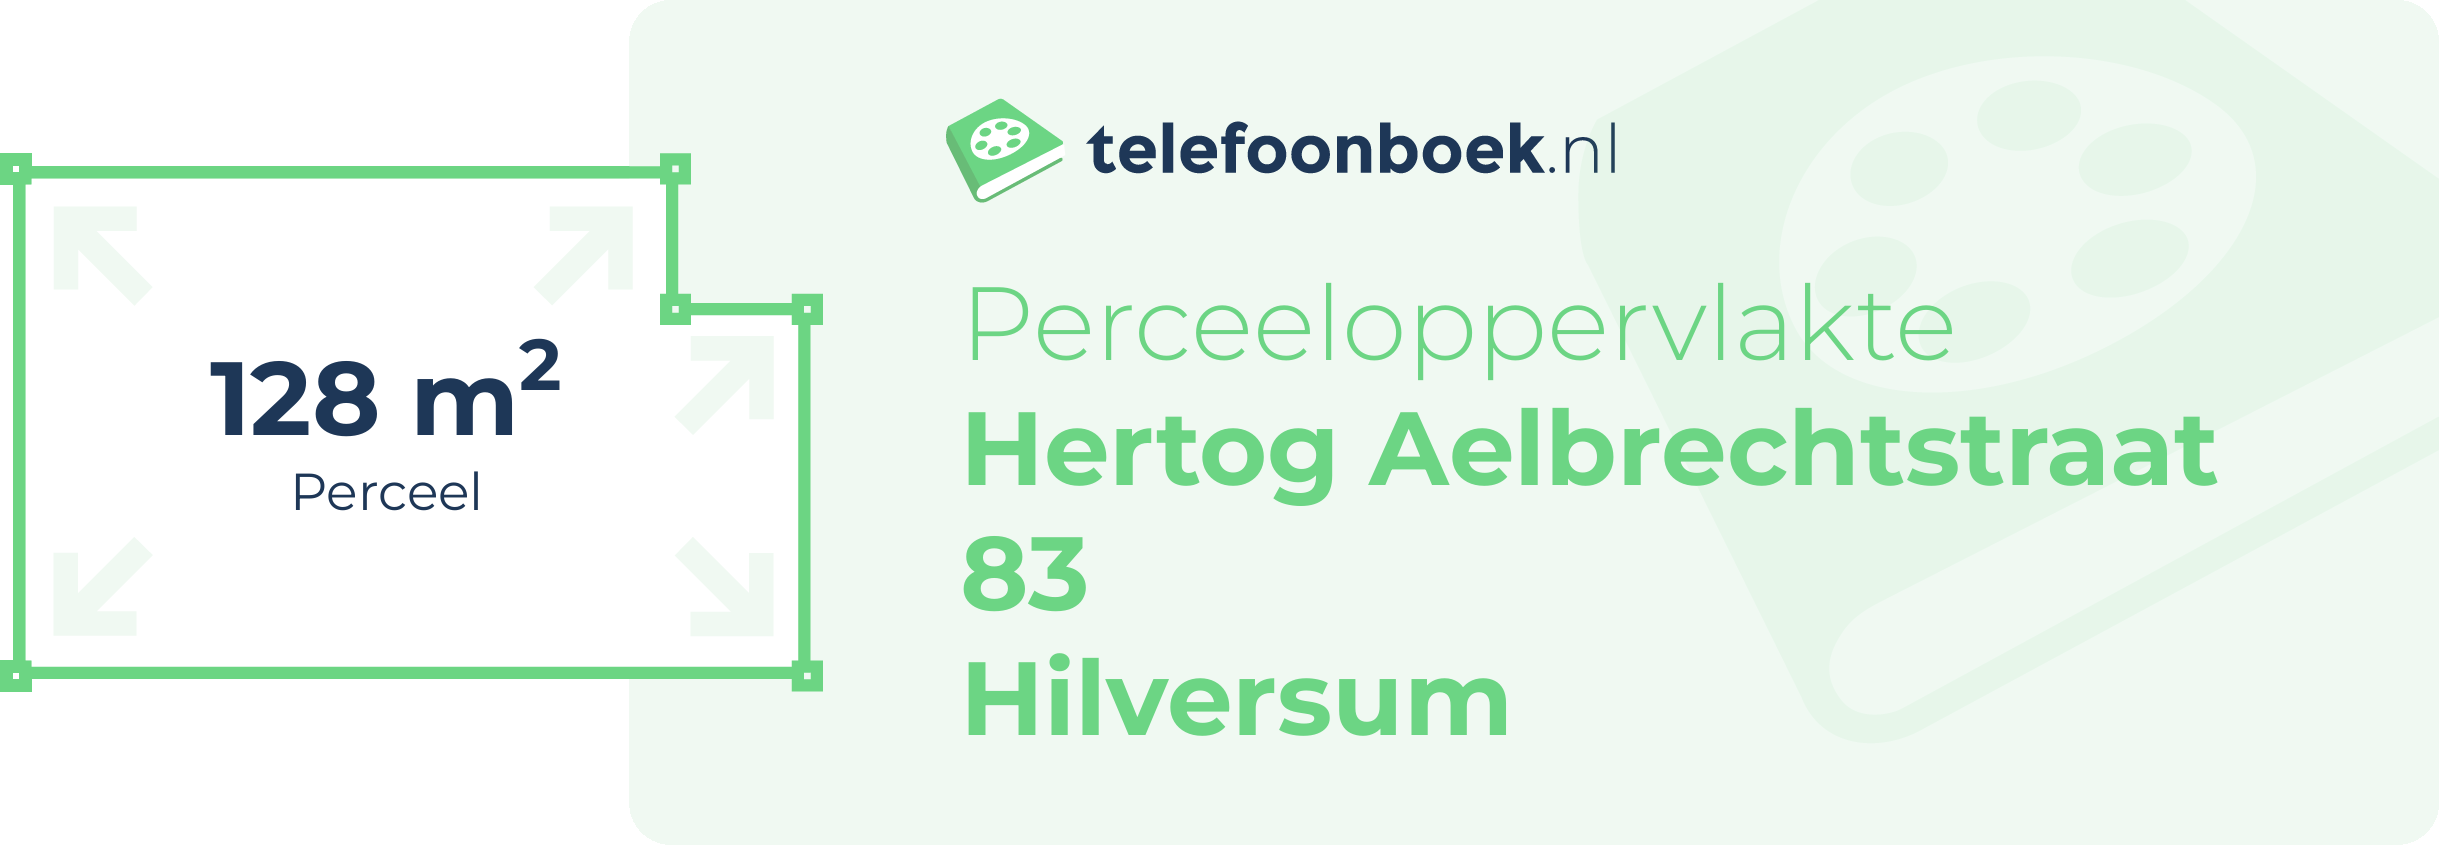 Perceeloppervlakte Hertog Aelbrechtstraat 83 Hilversum